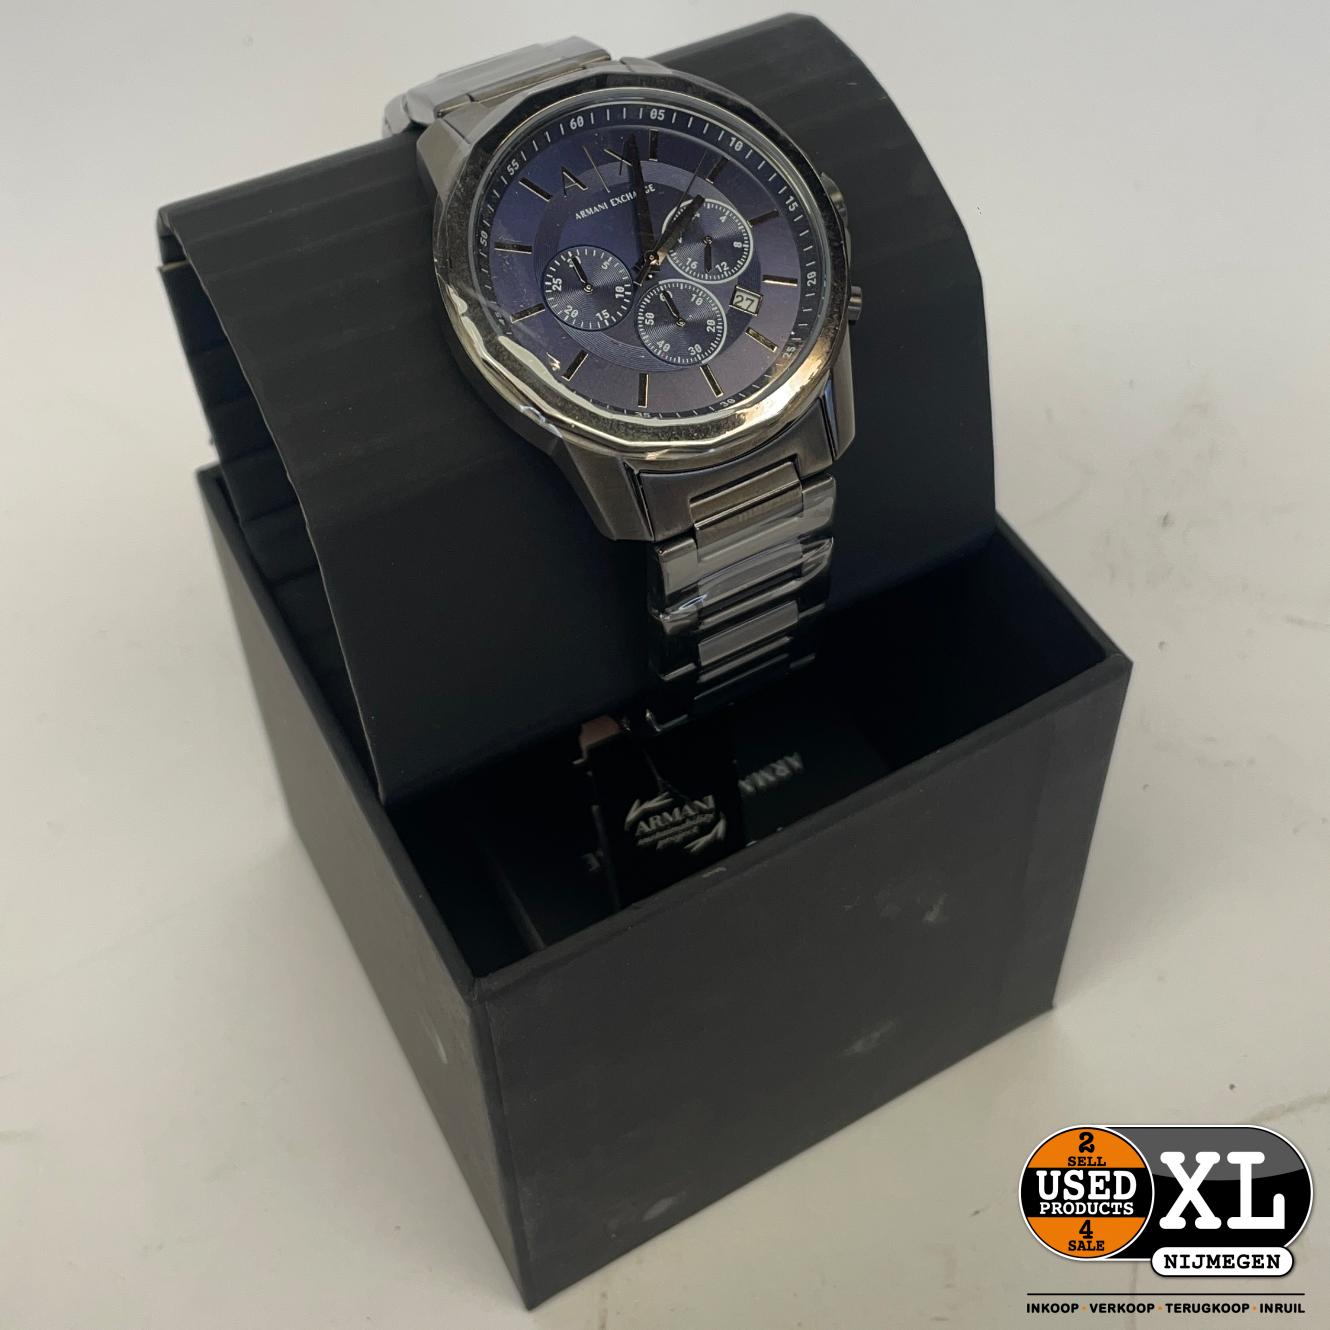 XL Exchange Blauw Products Antraciet met Nijmegen AX1731 Armani Nieuws - | Used Heren Horloge